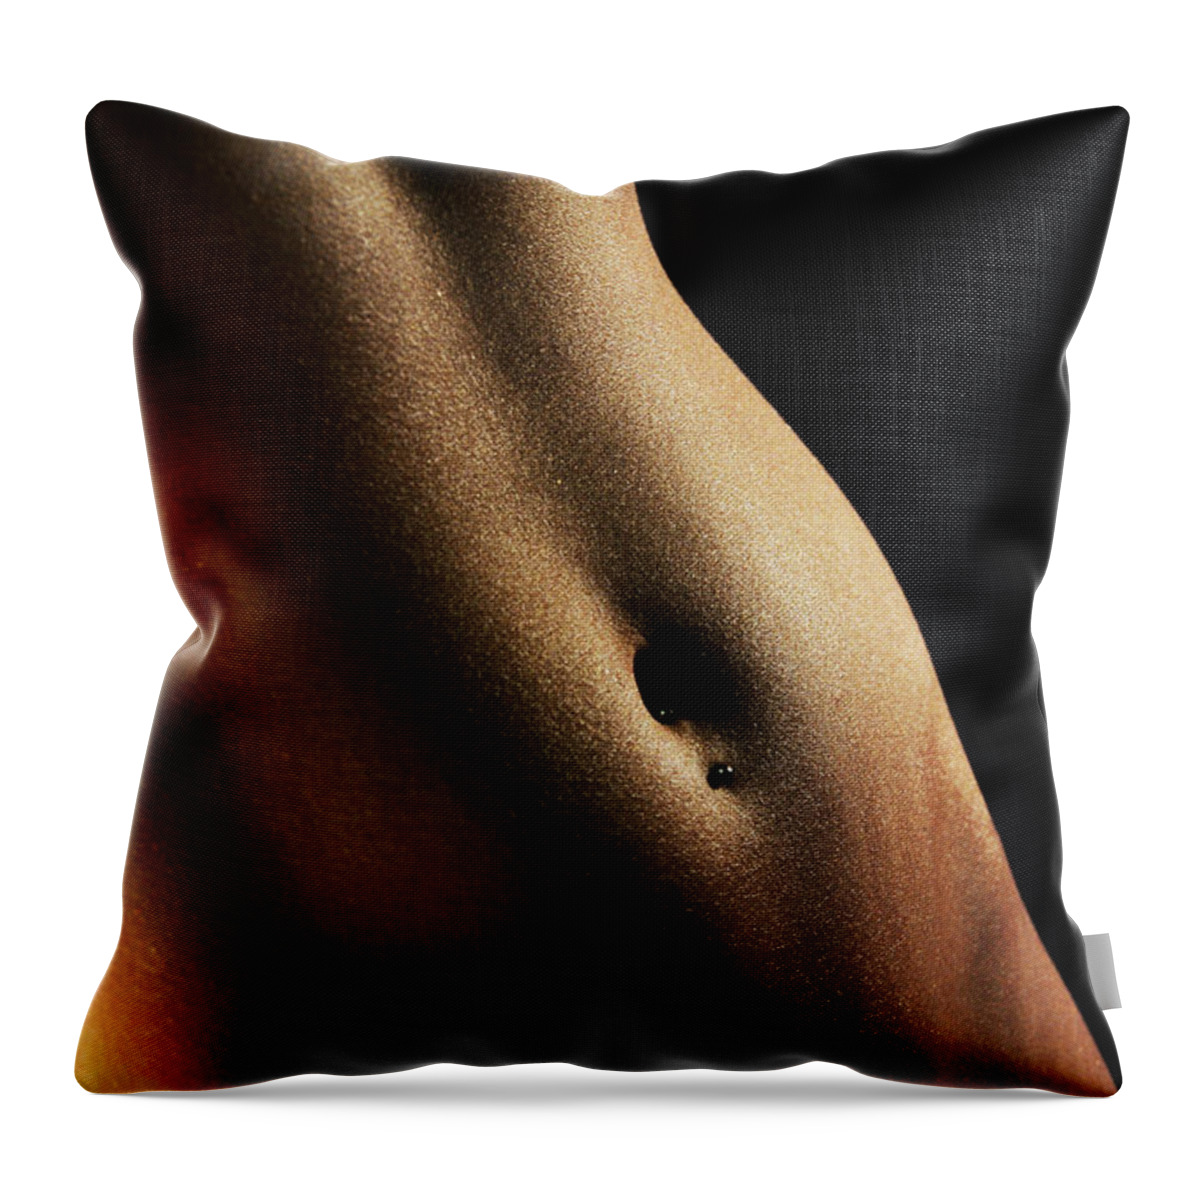 Artistic Throw Pillow featuring the photograph Golden tan by Robert WK Clark